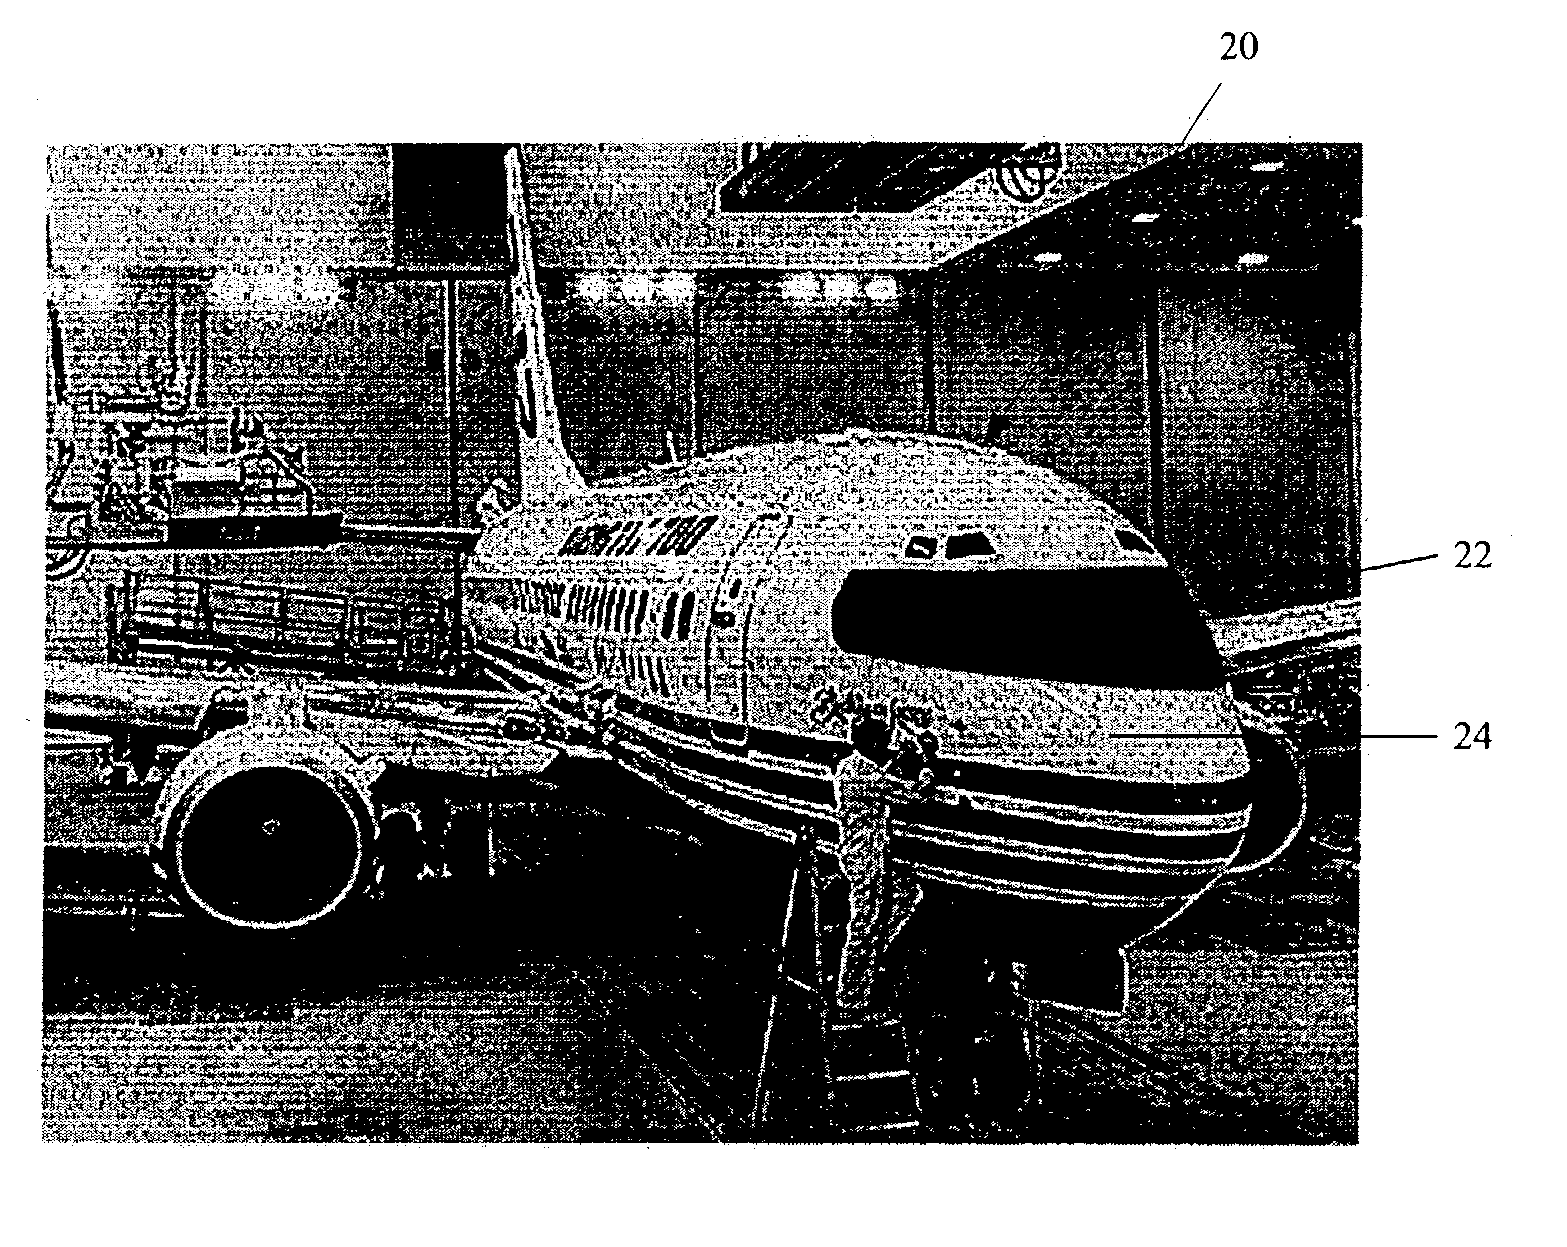 Vehicle windshield